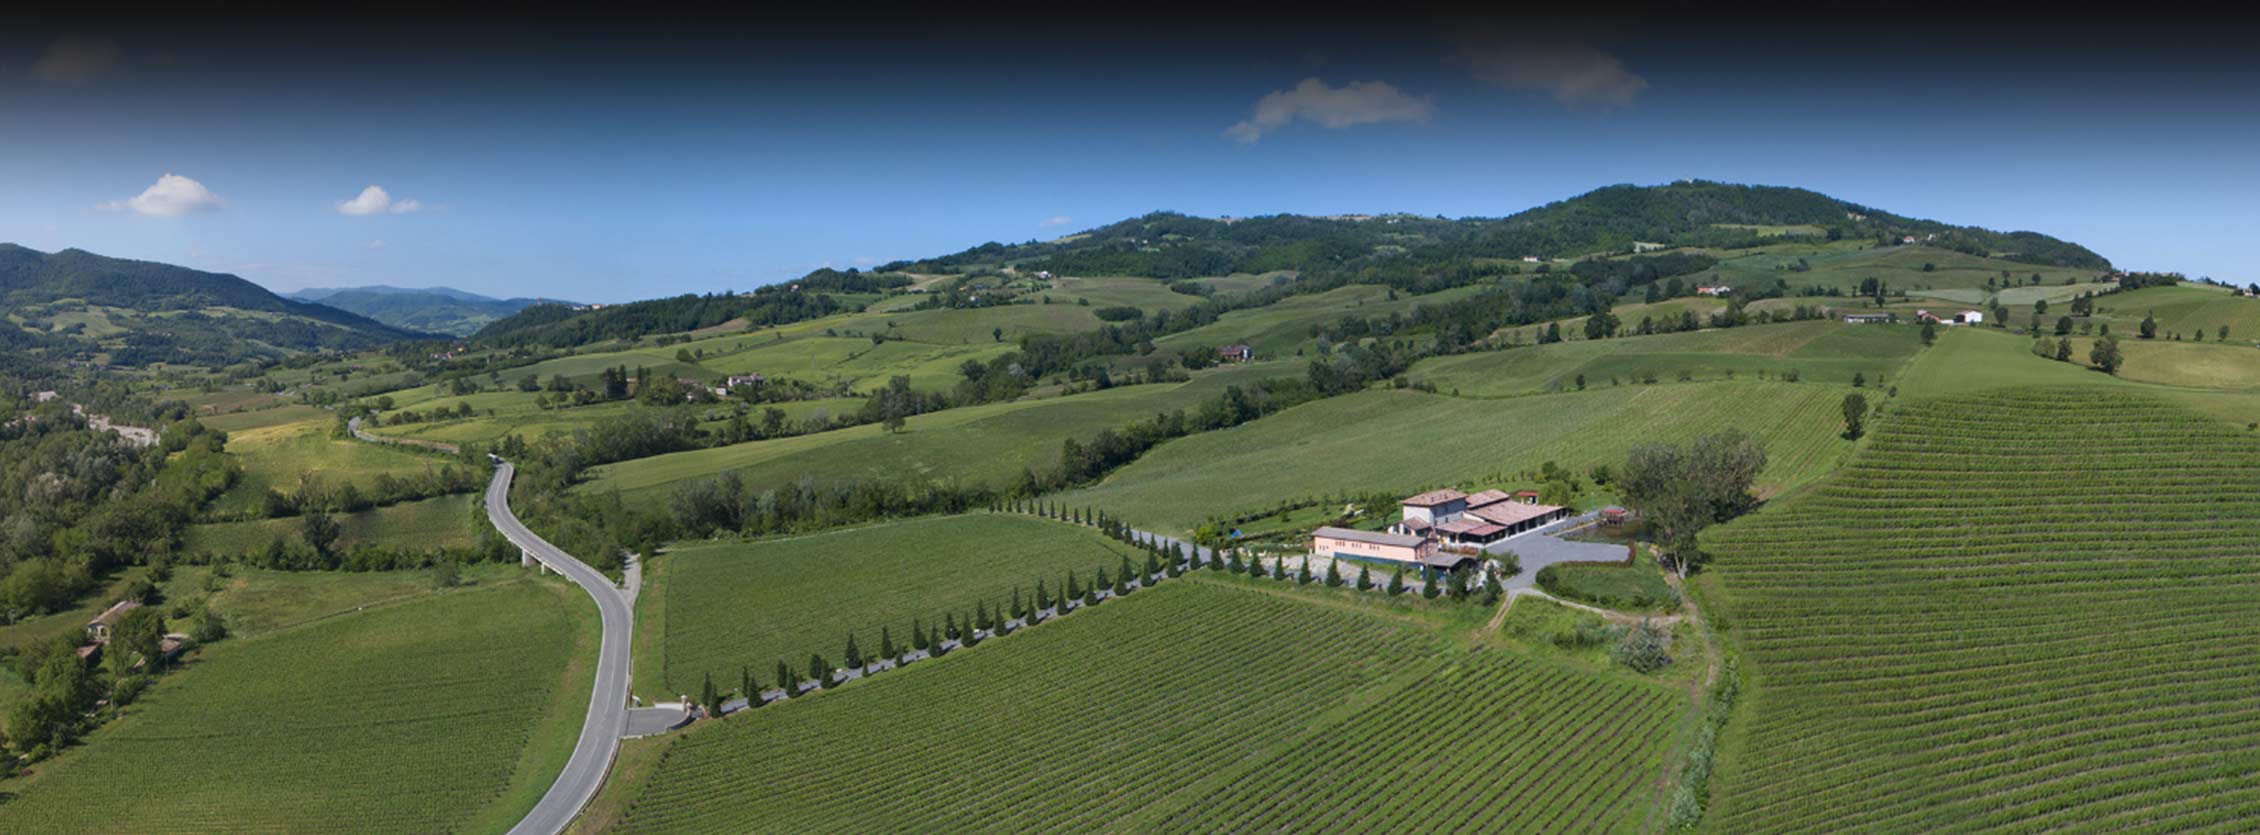 Veduta aerea dl territorio della Alta Val Tidone. In primo piano la tenuta con il suo parco ed i vitigni. Sullo sfondo il paesaggio collinare.